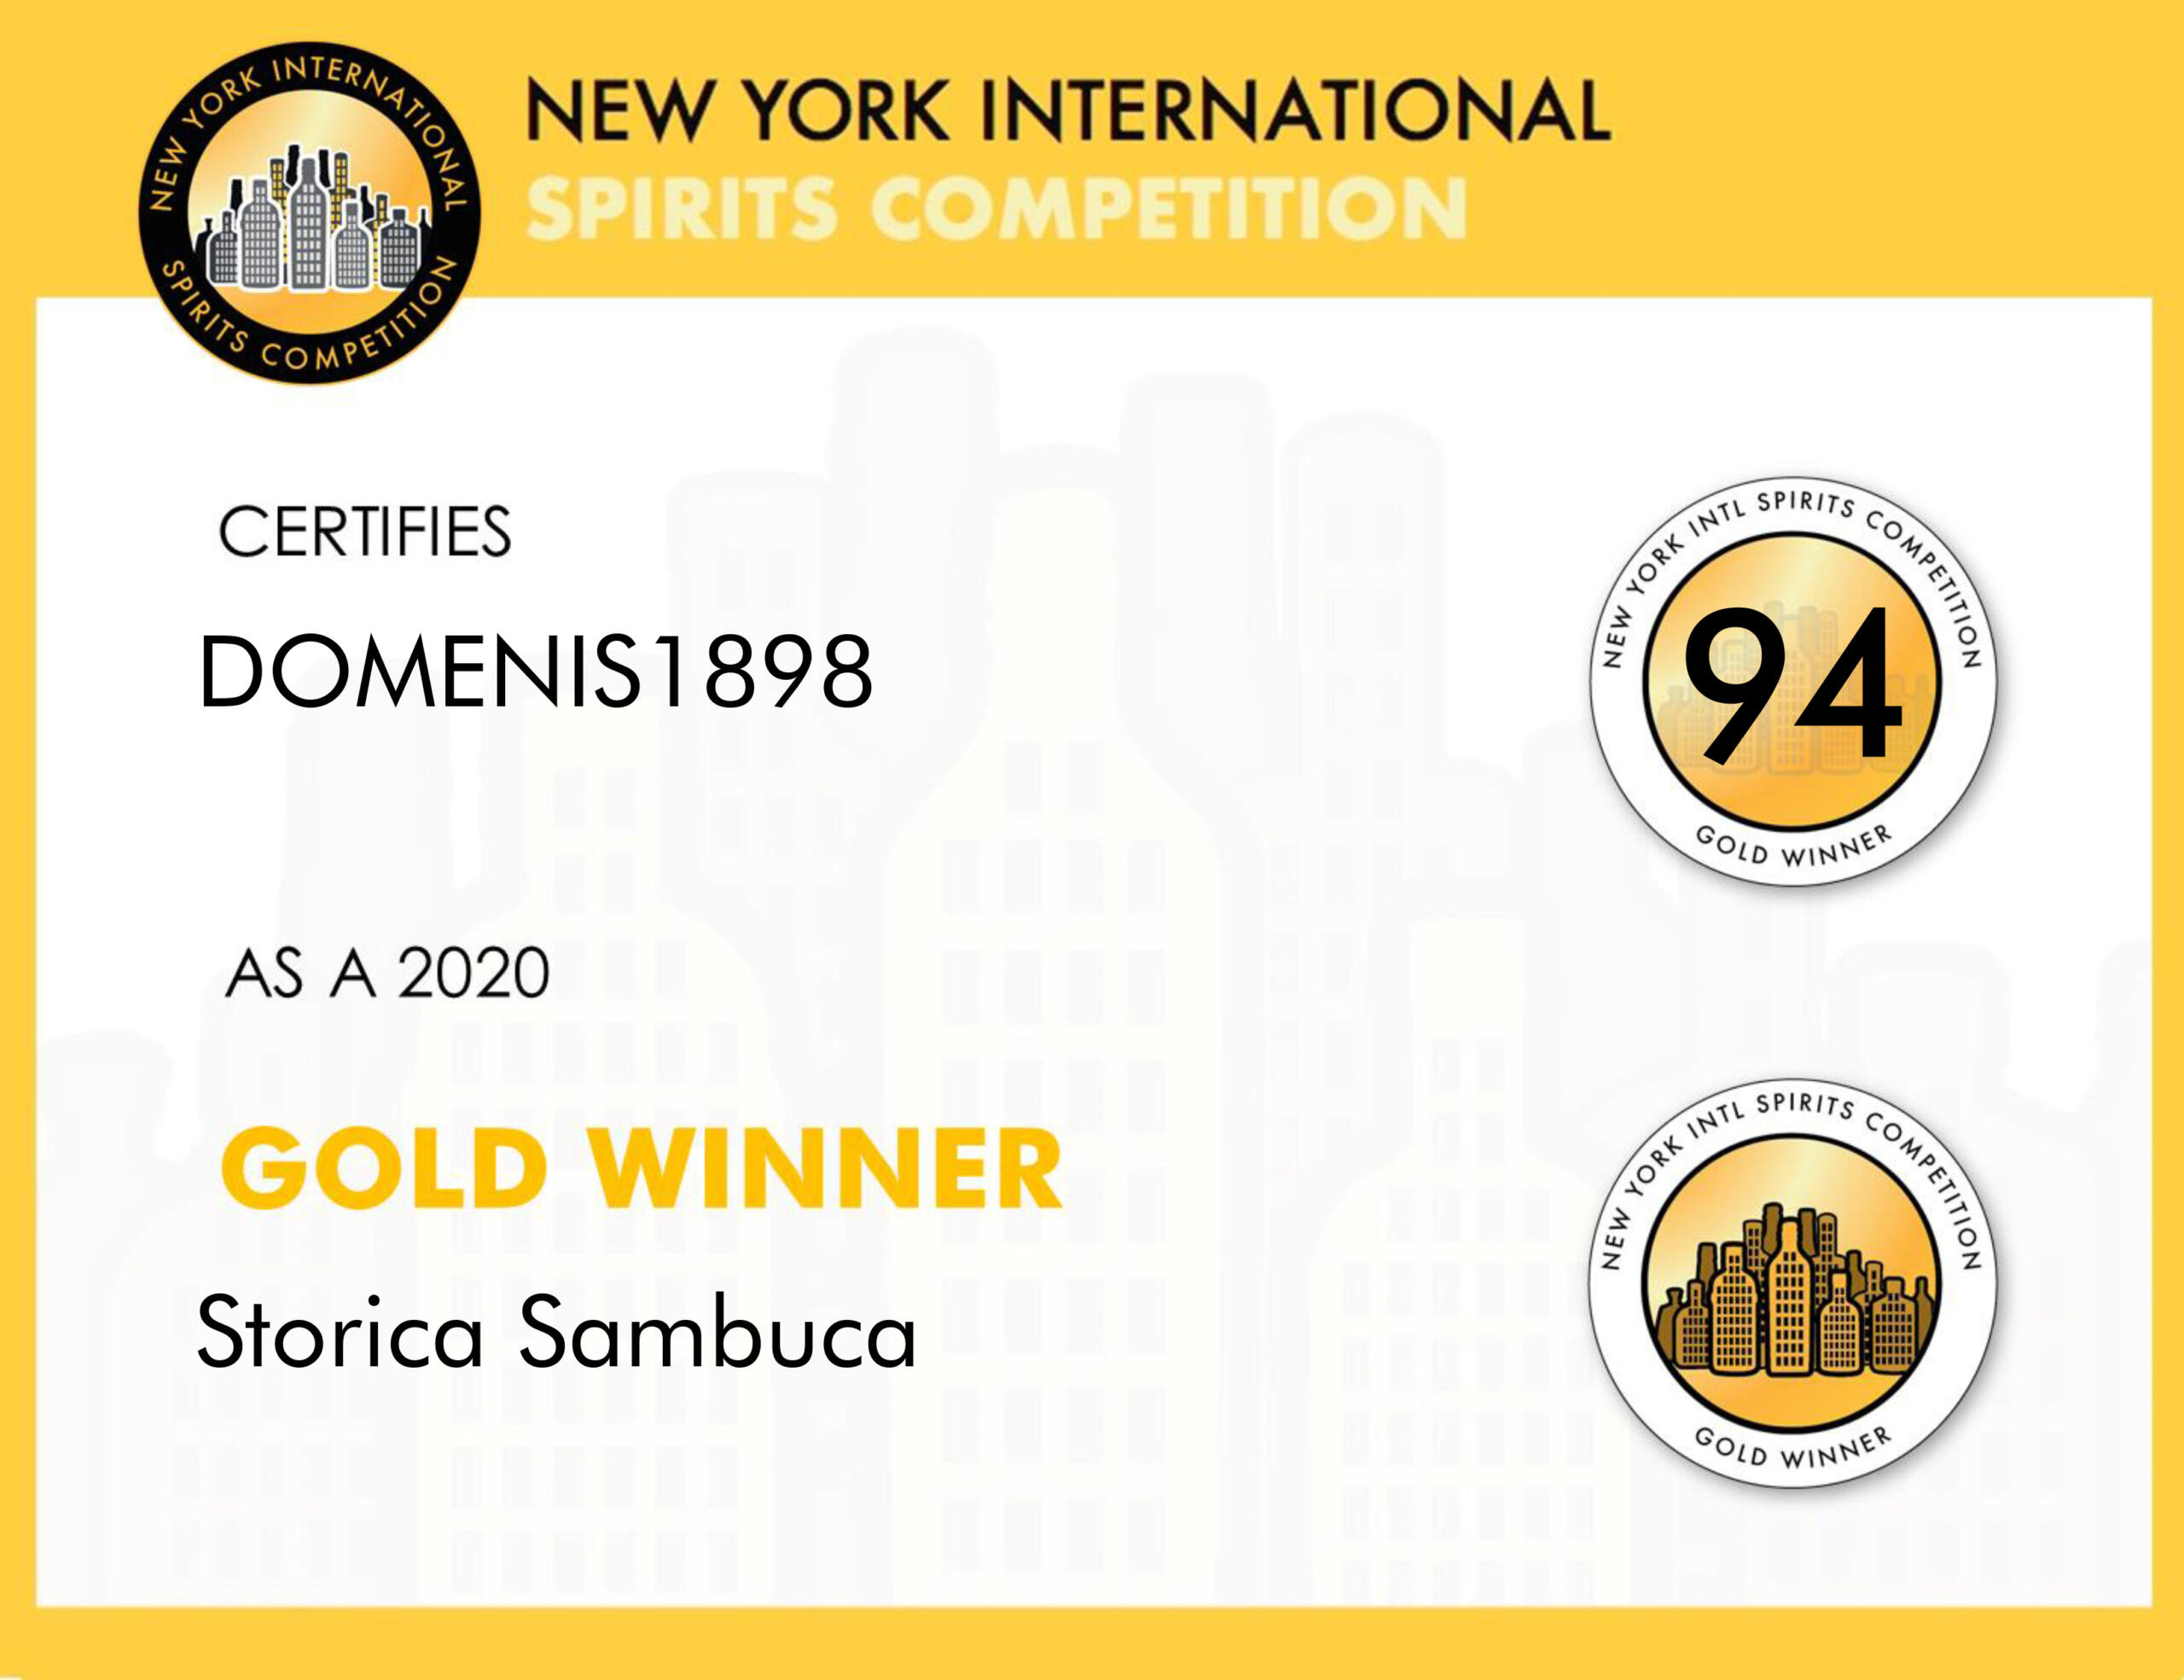 New York Intl Spirits Competition 2020 – Bronze Winner – Storica Sambuca